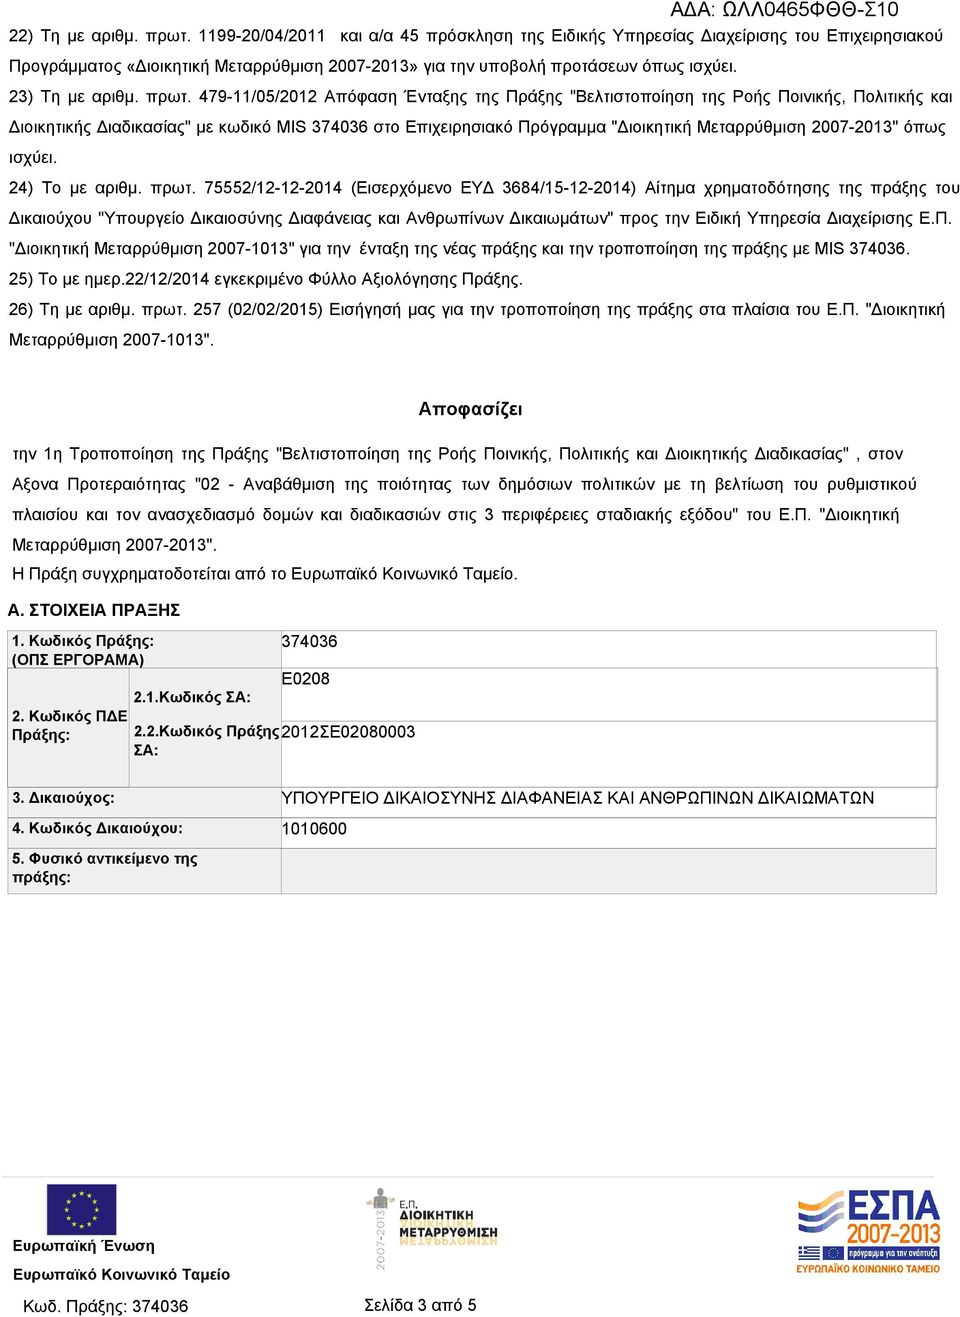 479-11/05/2012 Απόφαση Ένταξης της Πράξης "Βελτιστοποίηση της Ροής Ποινικής, Πολιτικής και Διοικητικής Διαδικασίας" με κωδικό MIS 374036 στο Επιχειρησιακό Πρόγραμμα "Διοικητική Μεταρρύθμιση